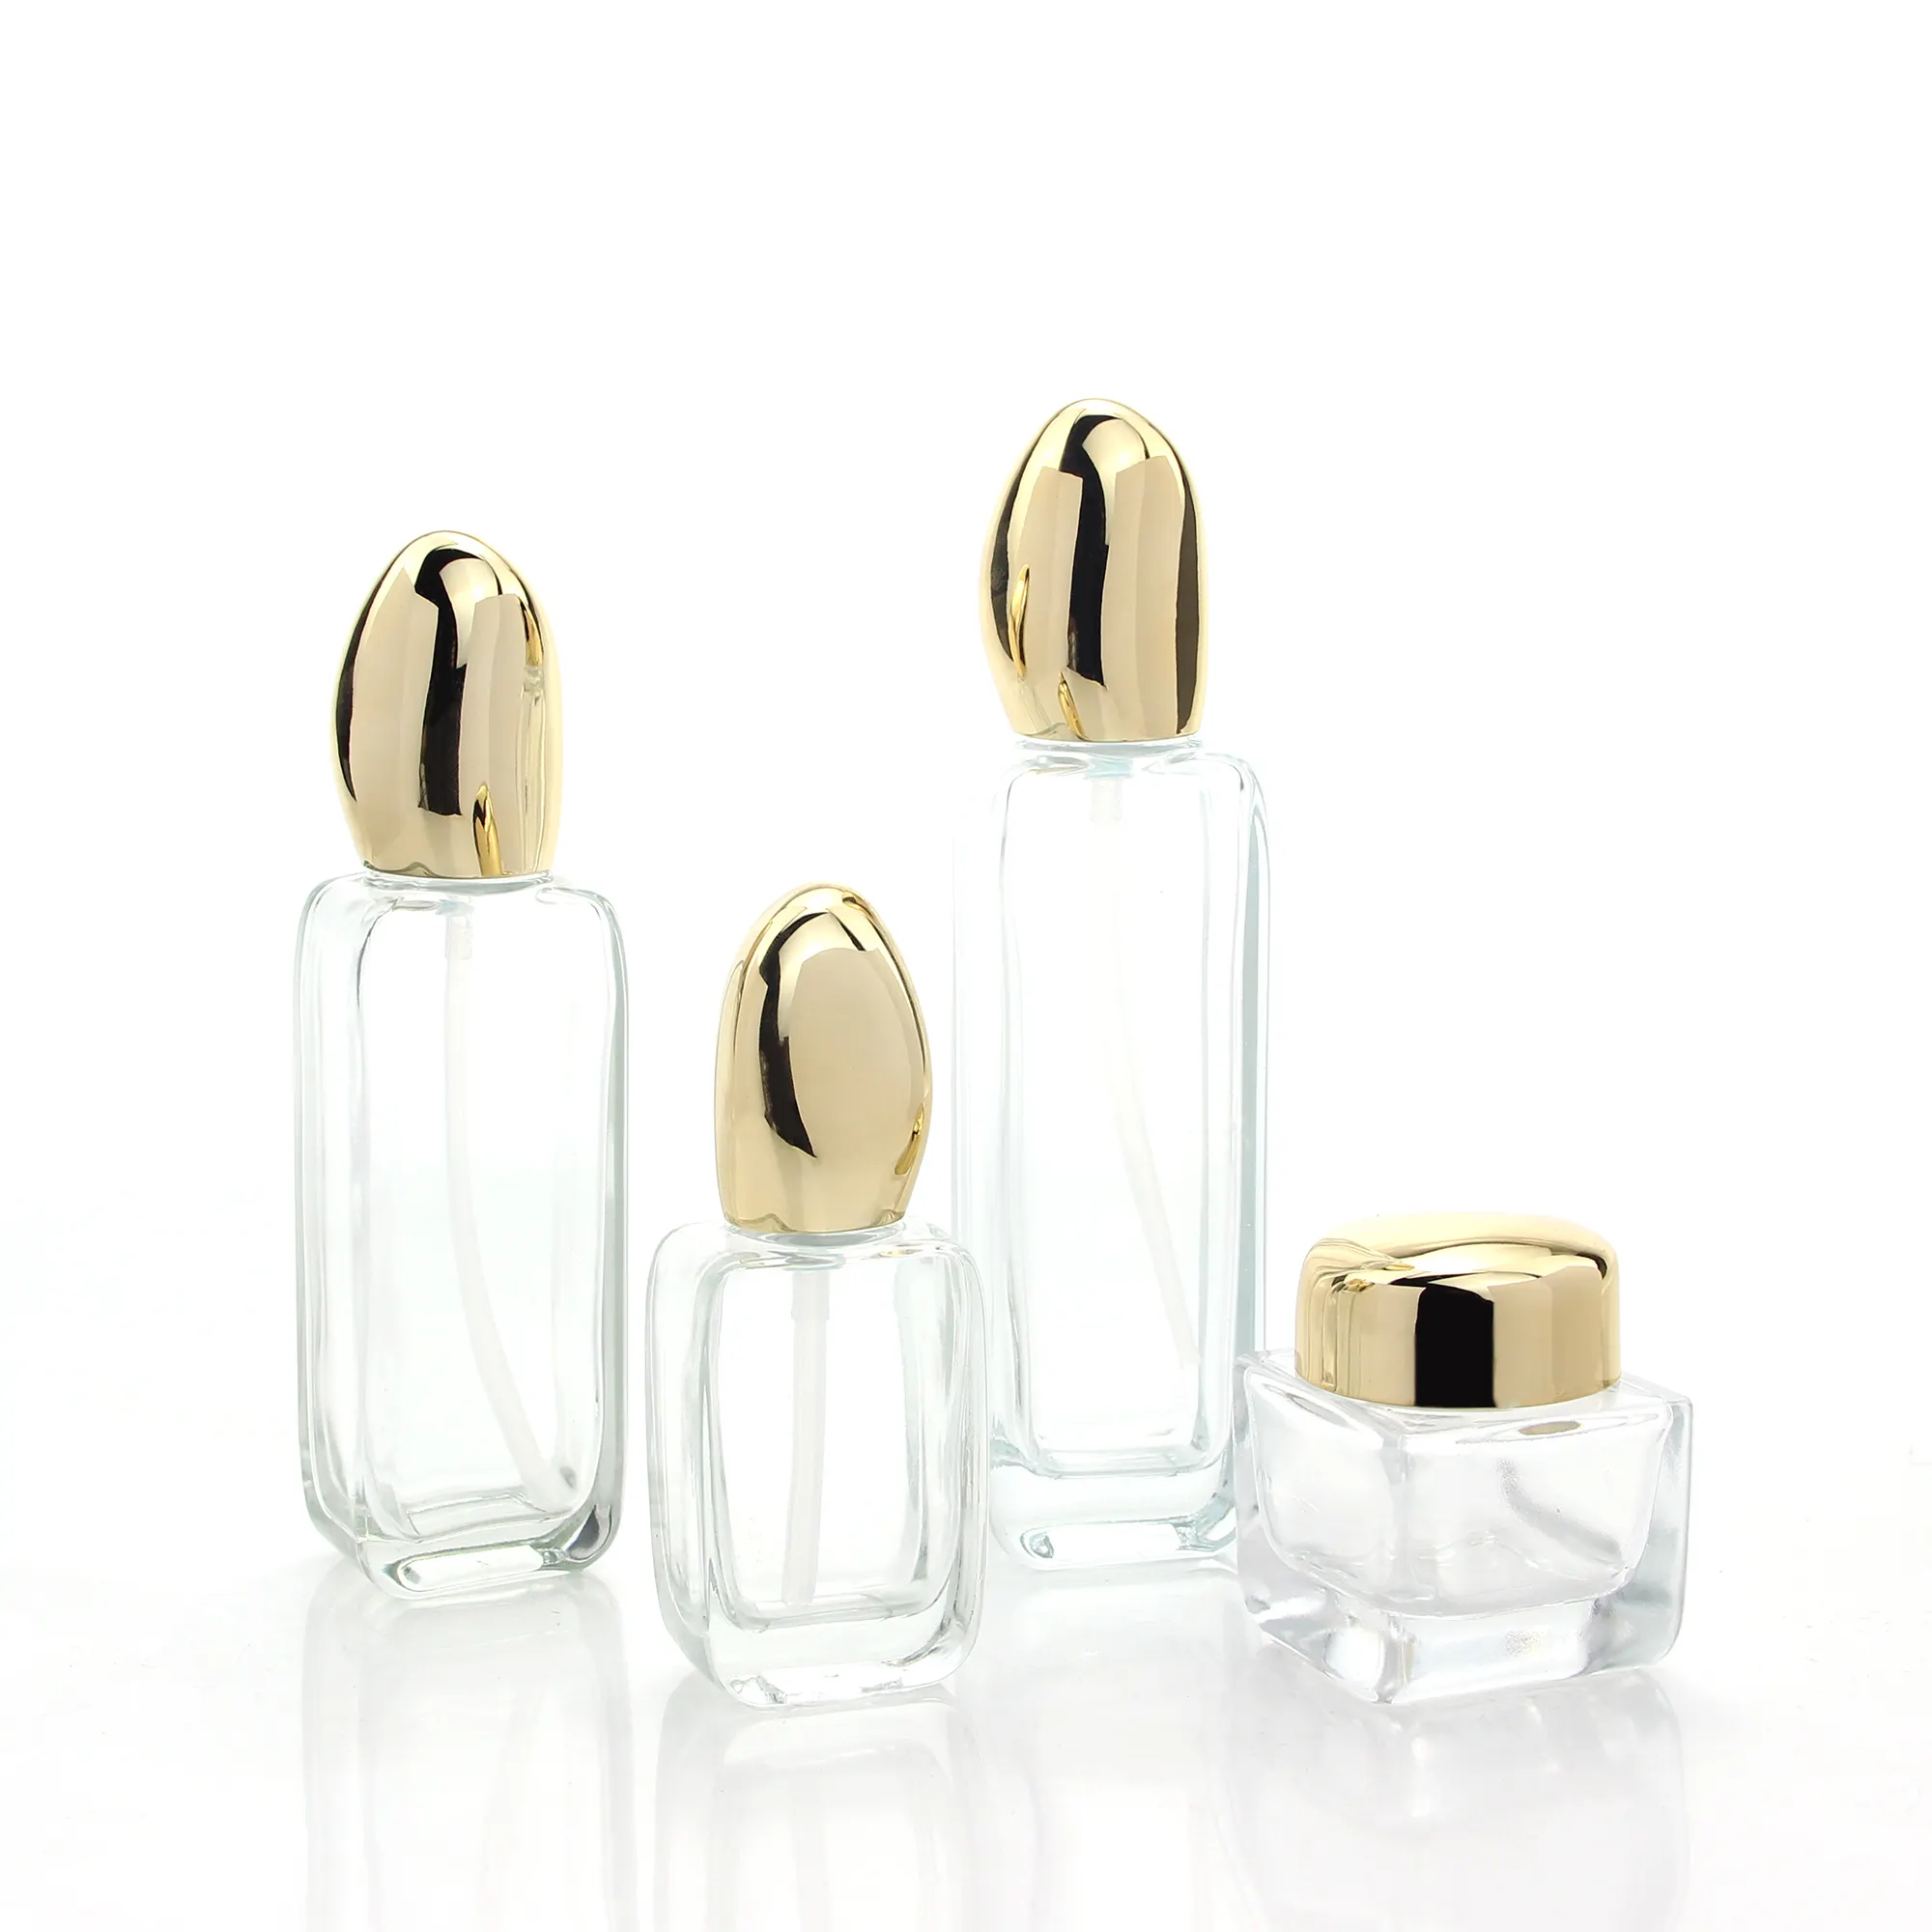 Nouveau design unique, emballage carré pour cosmétiques, bouteilles à pompe pour lotion, conteneurs et bocaux en verre avec couvercle doré